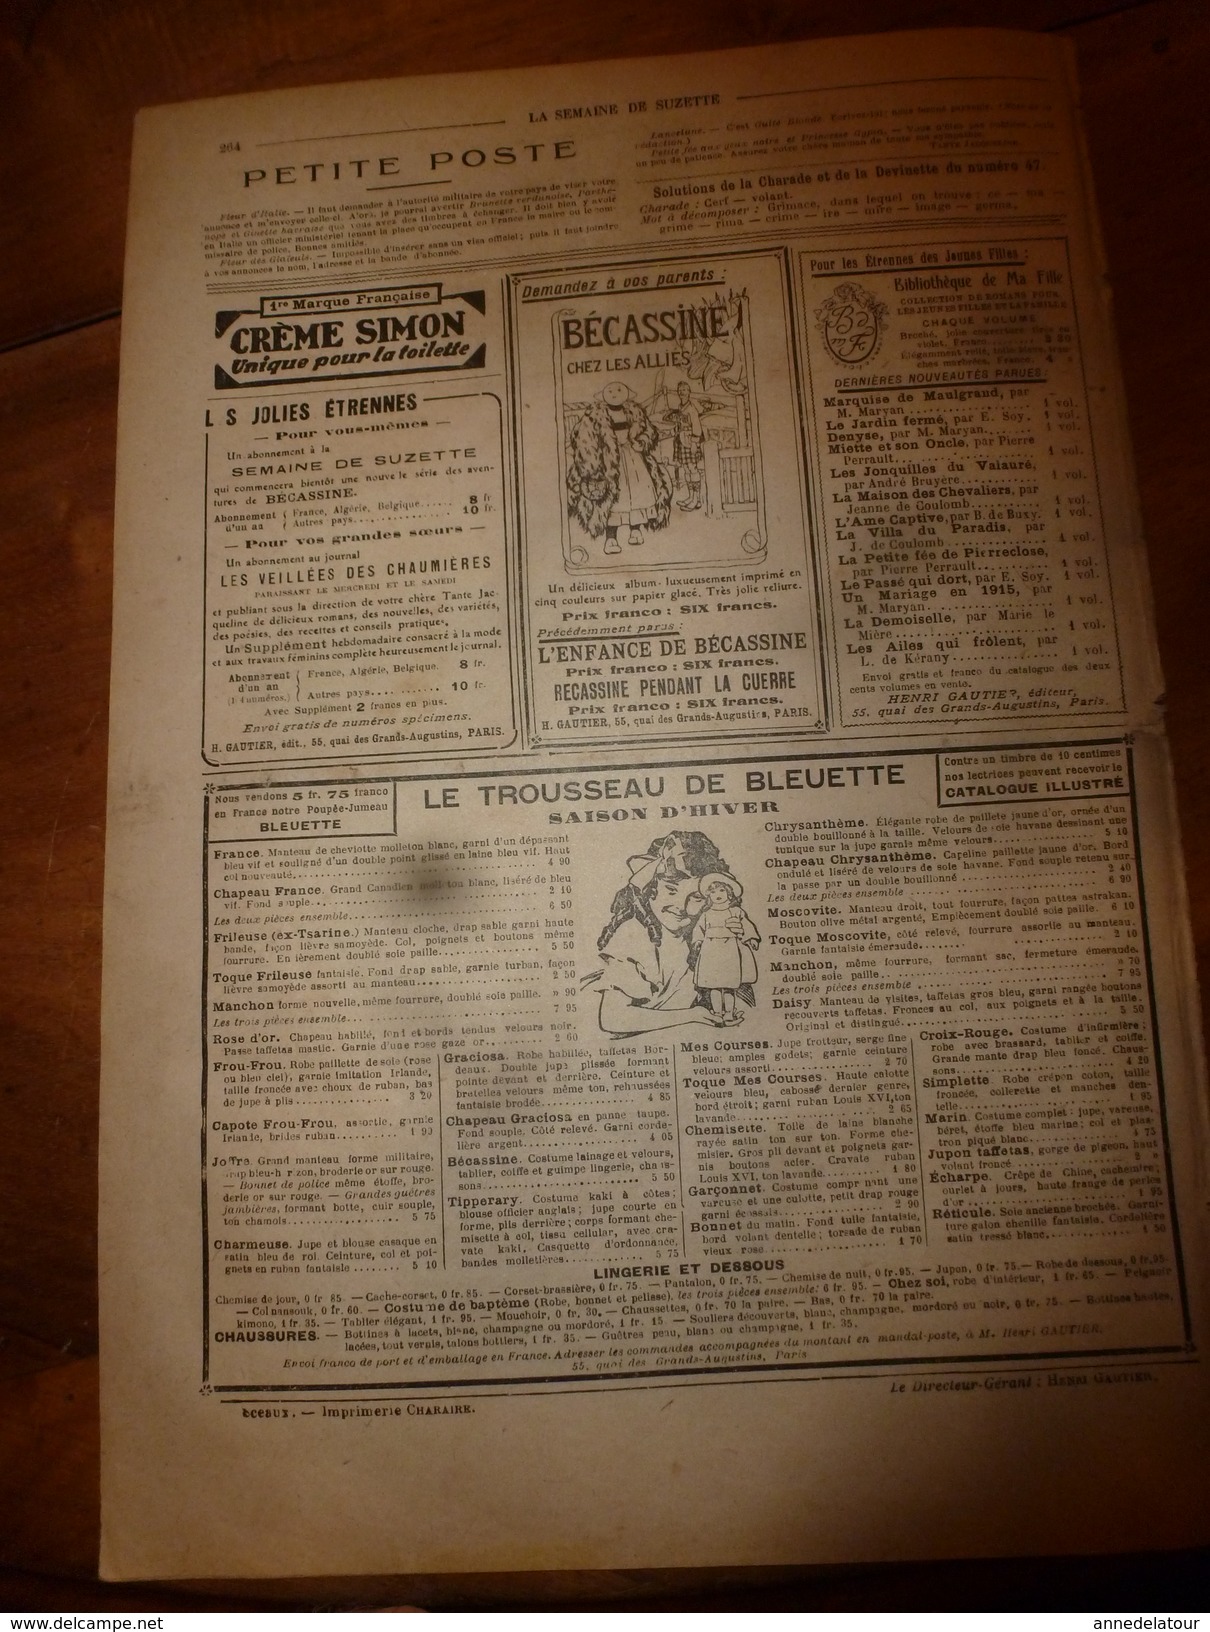 1917 Les étrennes D'une Enfant Gâtée ; Etc (LSDS)  LA SEMAINE DE SUZETTE - La Semaine De Suzette